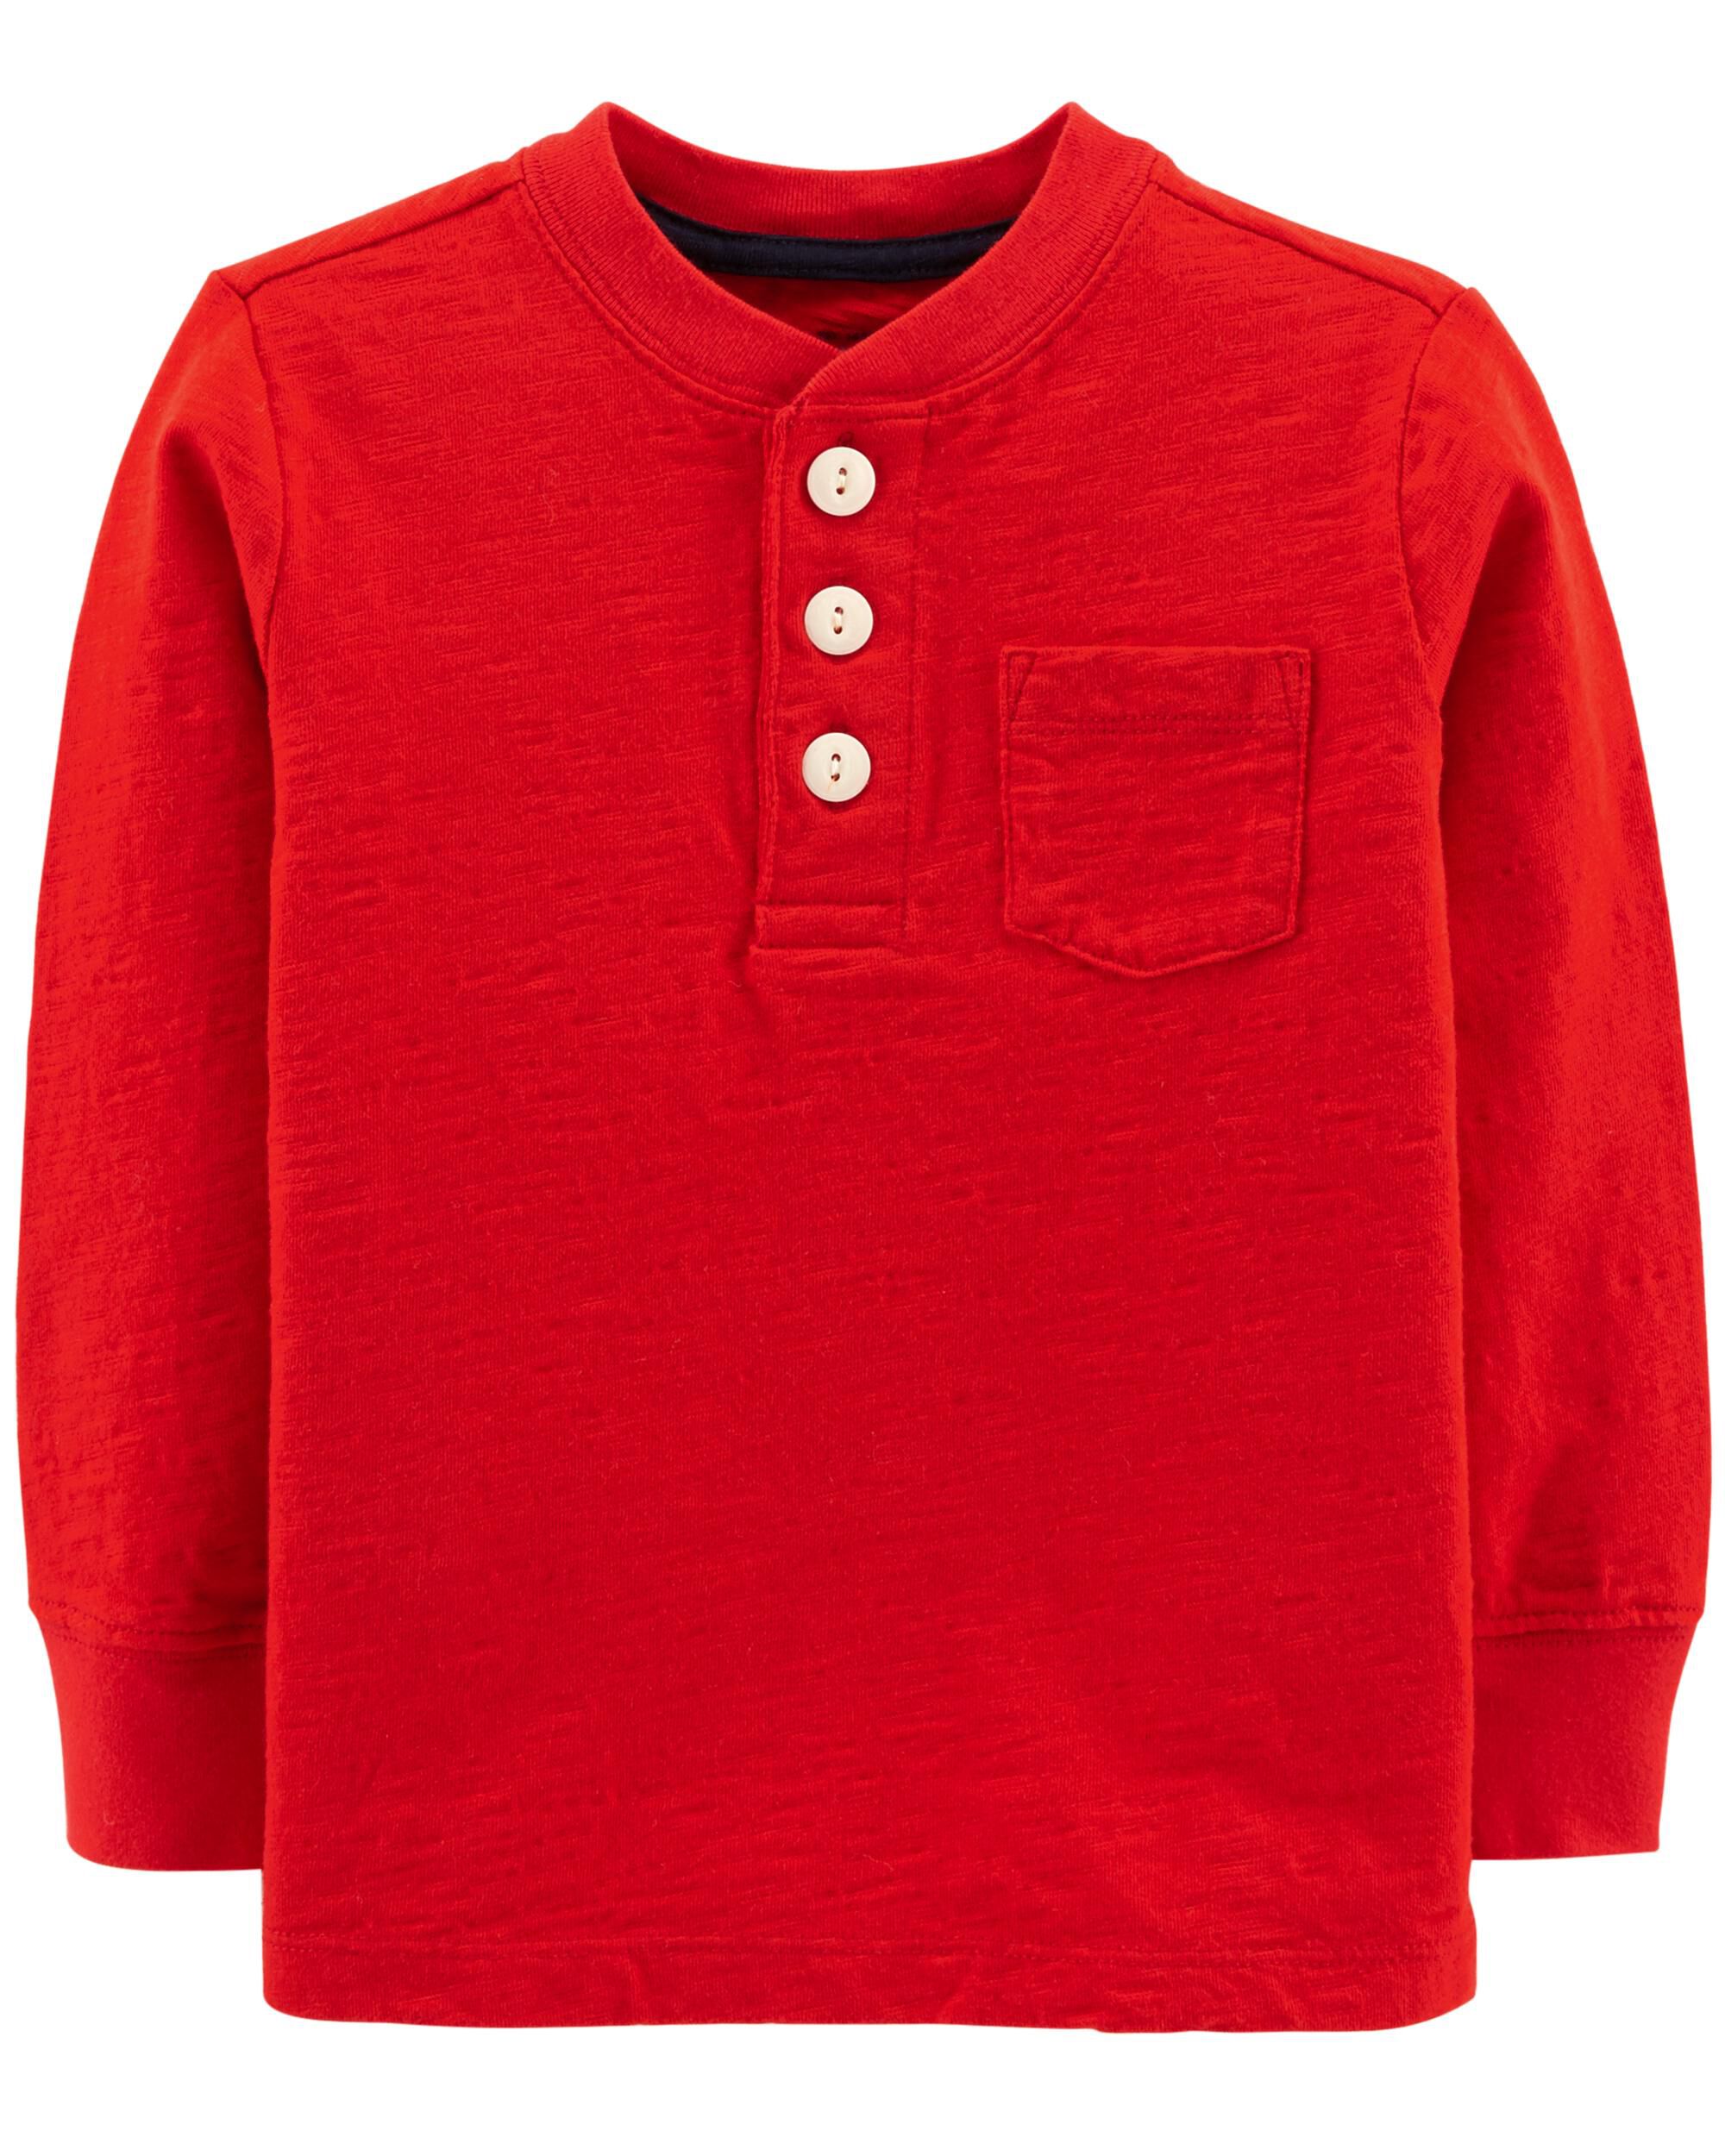 red henley shirt